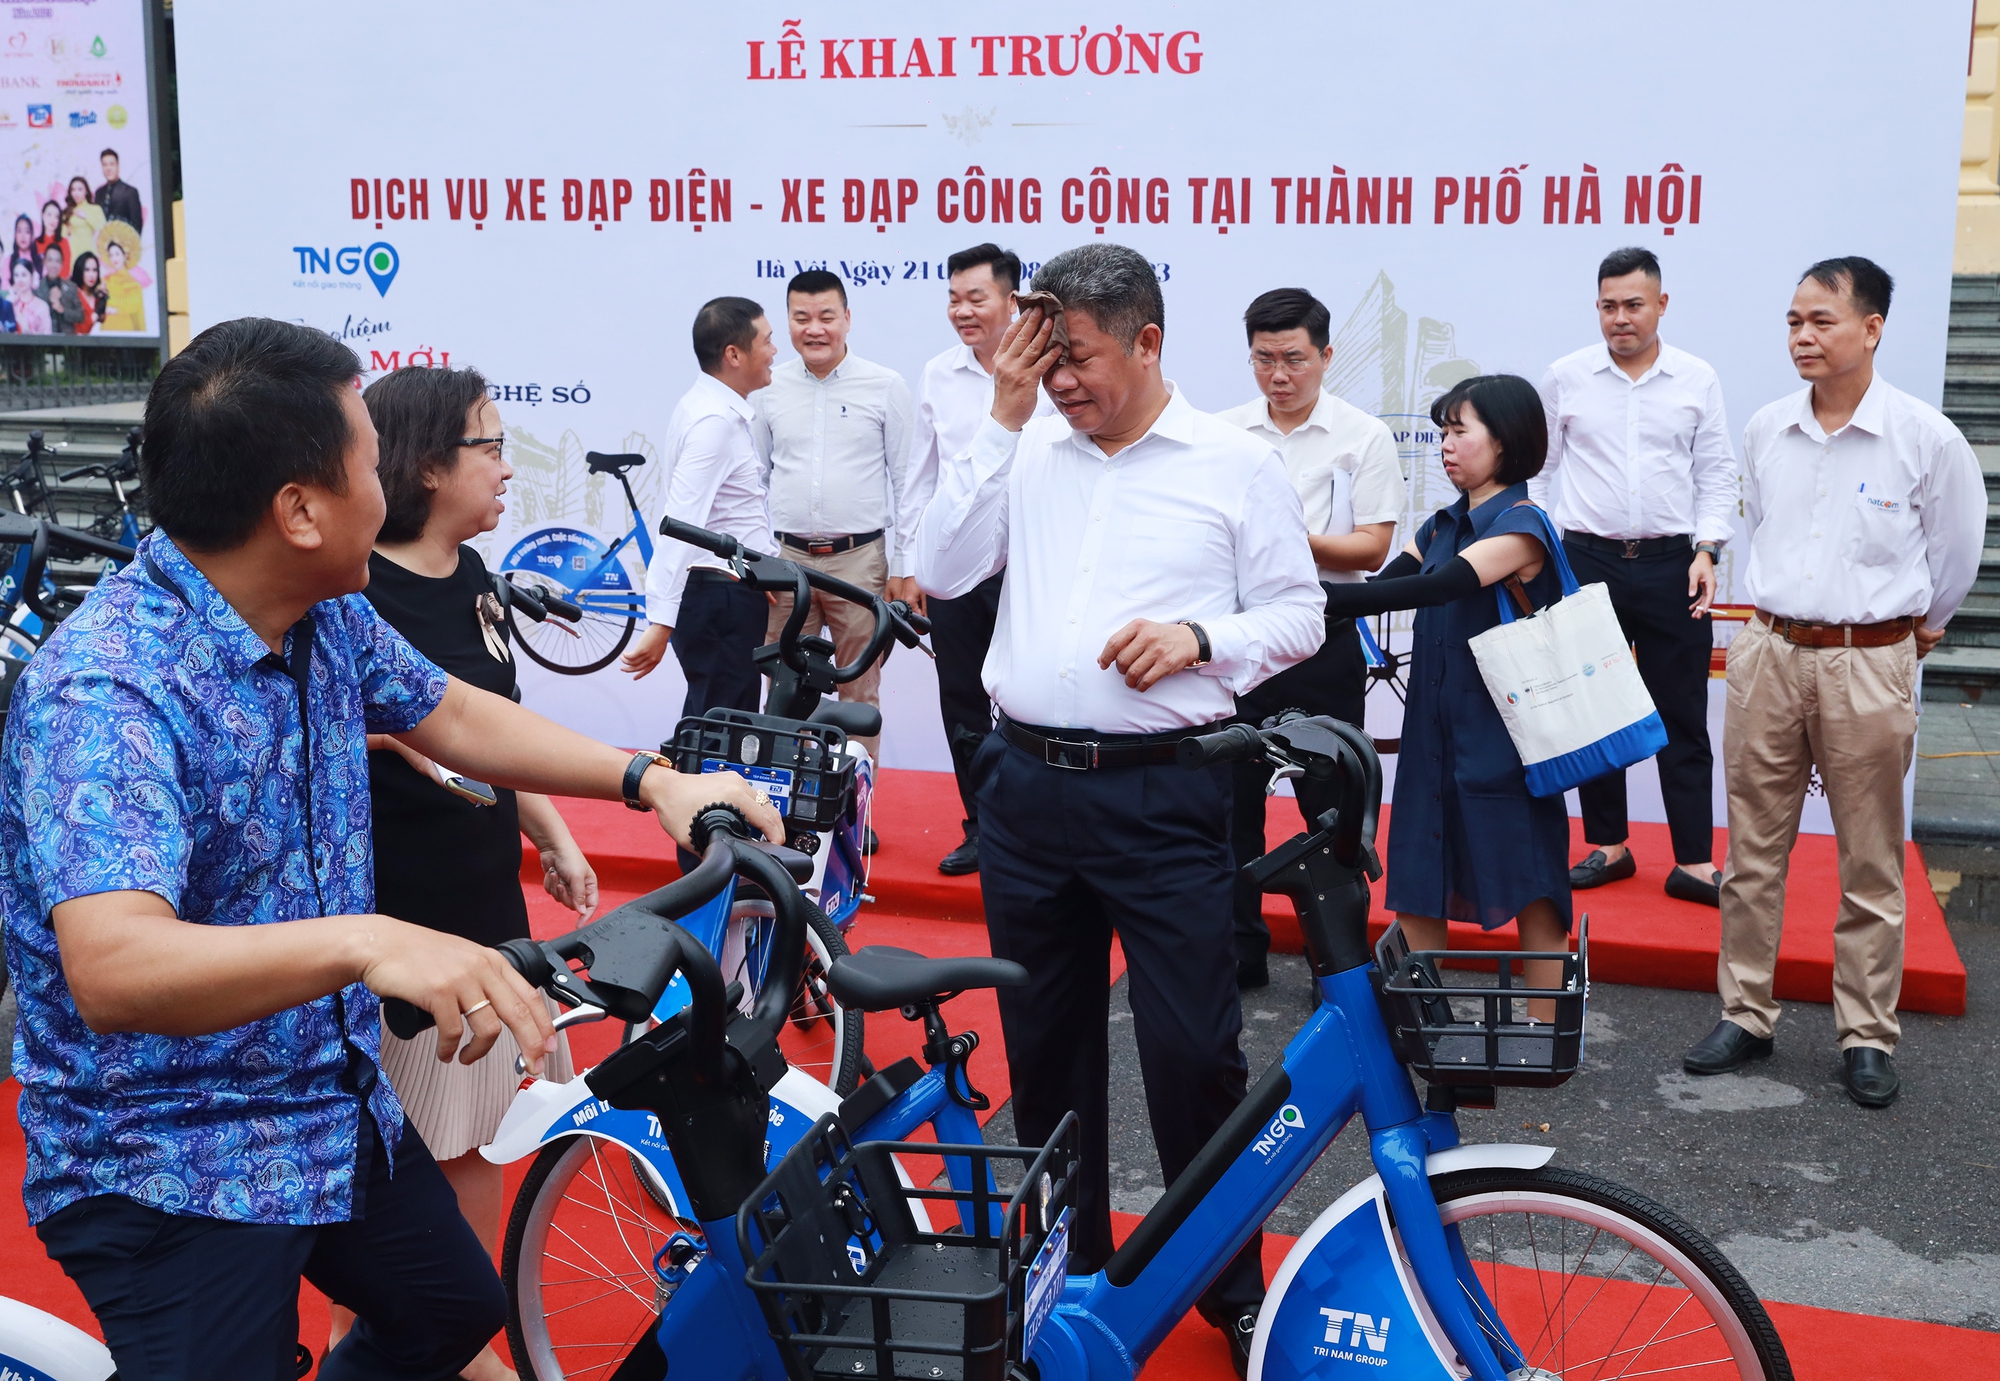 Phó chủ tịch Hà Nội mướt mồ hôi trải nghiệm dịch vụ xe đạp công cộng - Ảnh 8.